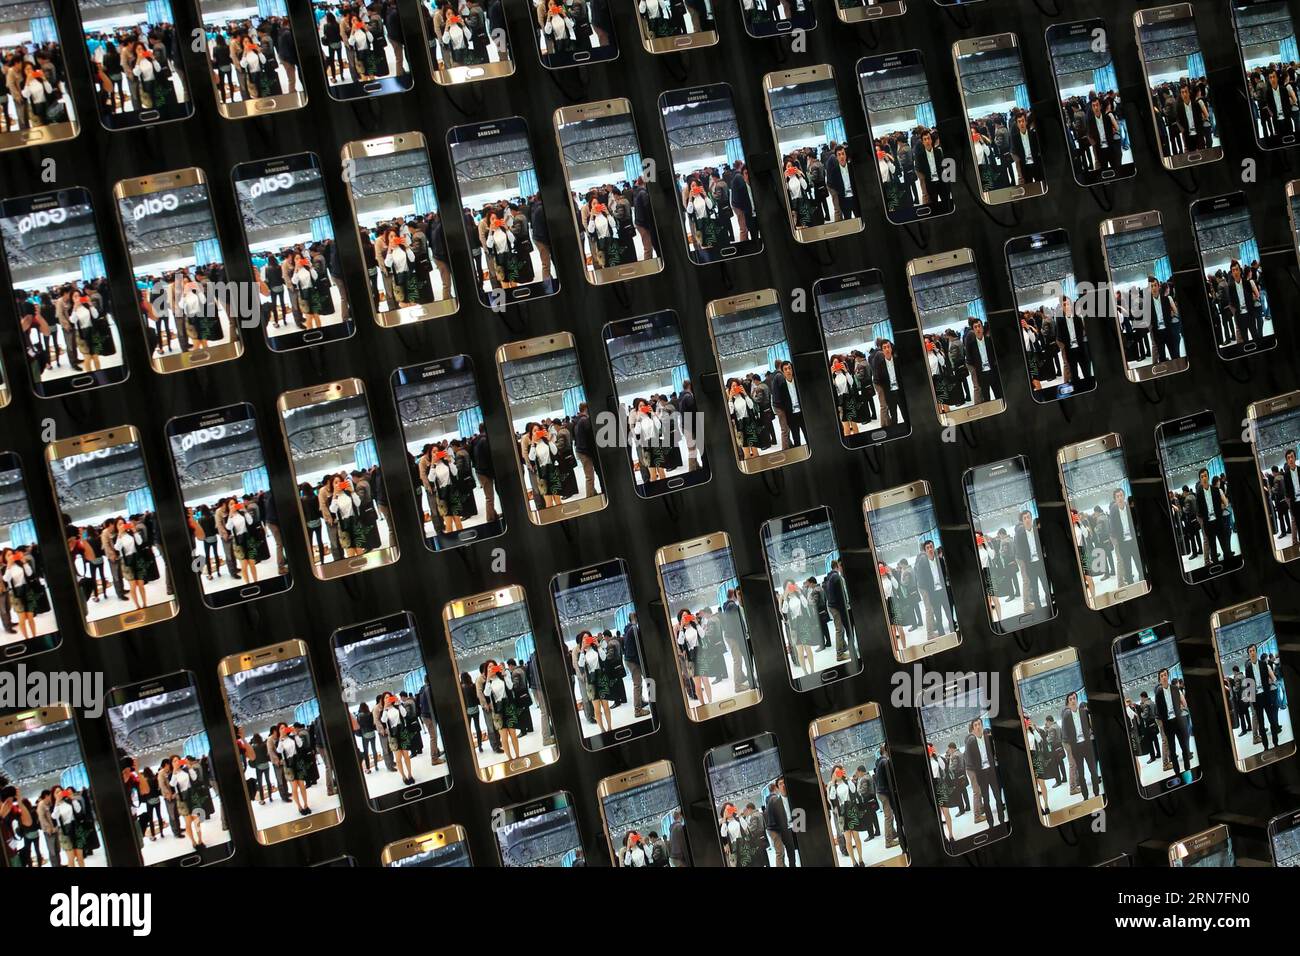 (150904) -- BERLIN, 4 septembre 2015 -- les visiteurs voient un écran de smartphones Samsung Galaxy S6 Edge sur le stand Samsung du 55e salon IFA de l'électronique grand public à Berlin, Allemagne, le 4 septembre 2015. Alors que le 55e salon IFA de l électronique grand public, le plus grand salon européen de l électronique grand public et de l électroménager, a débuté vendredi à Berlin, China Brand Show a également tenu sa première cérémonie d ouverture à l IFA. ALLEMAGNE-BERLIN-IFA SALON DE L'ÉLECTRONIQUE GRAND PUBLIC ZhangxFan PUBLICATIONxNOTxINxCHN 150904 Berlin sept 4 2015 visiteurs Voir un écran de smartphones Samsung Galaxy S6 Edge SUR LE stand Samsung S du 55e I. Banque D'Images